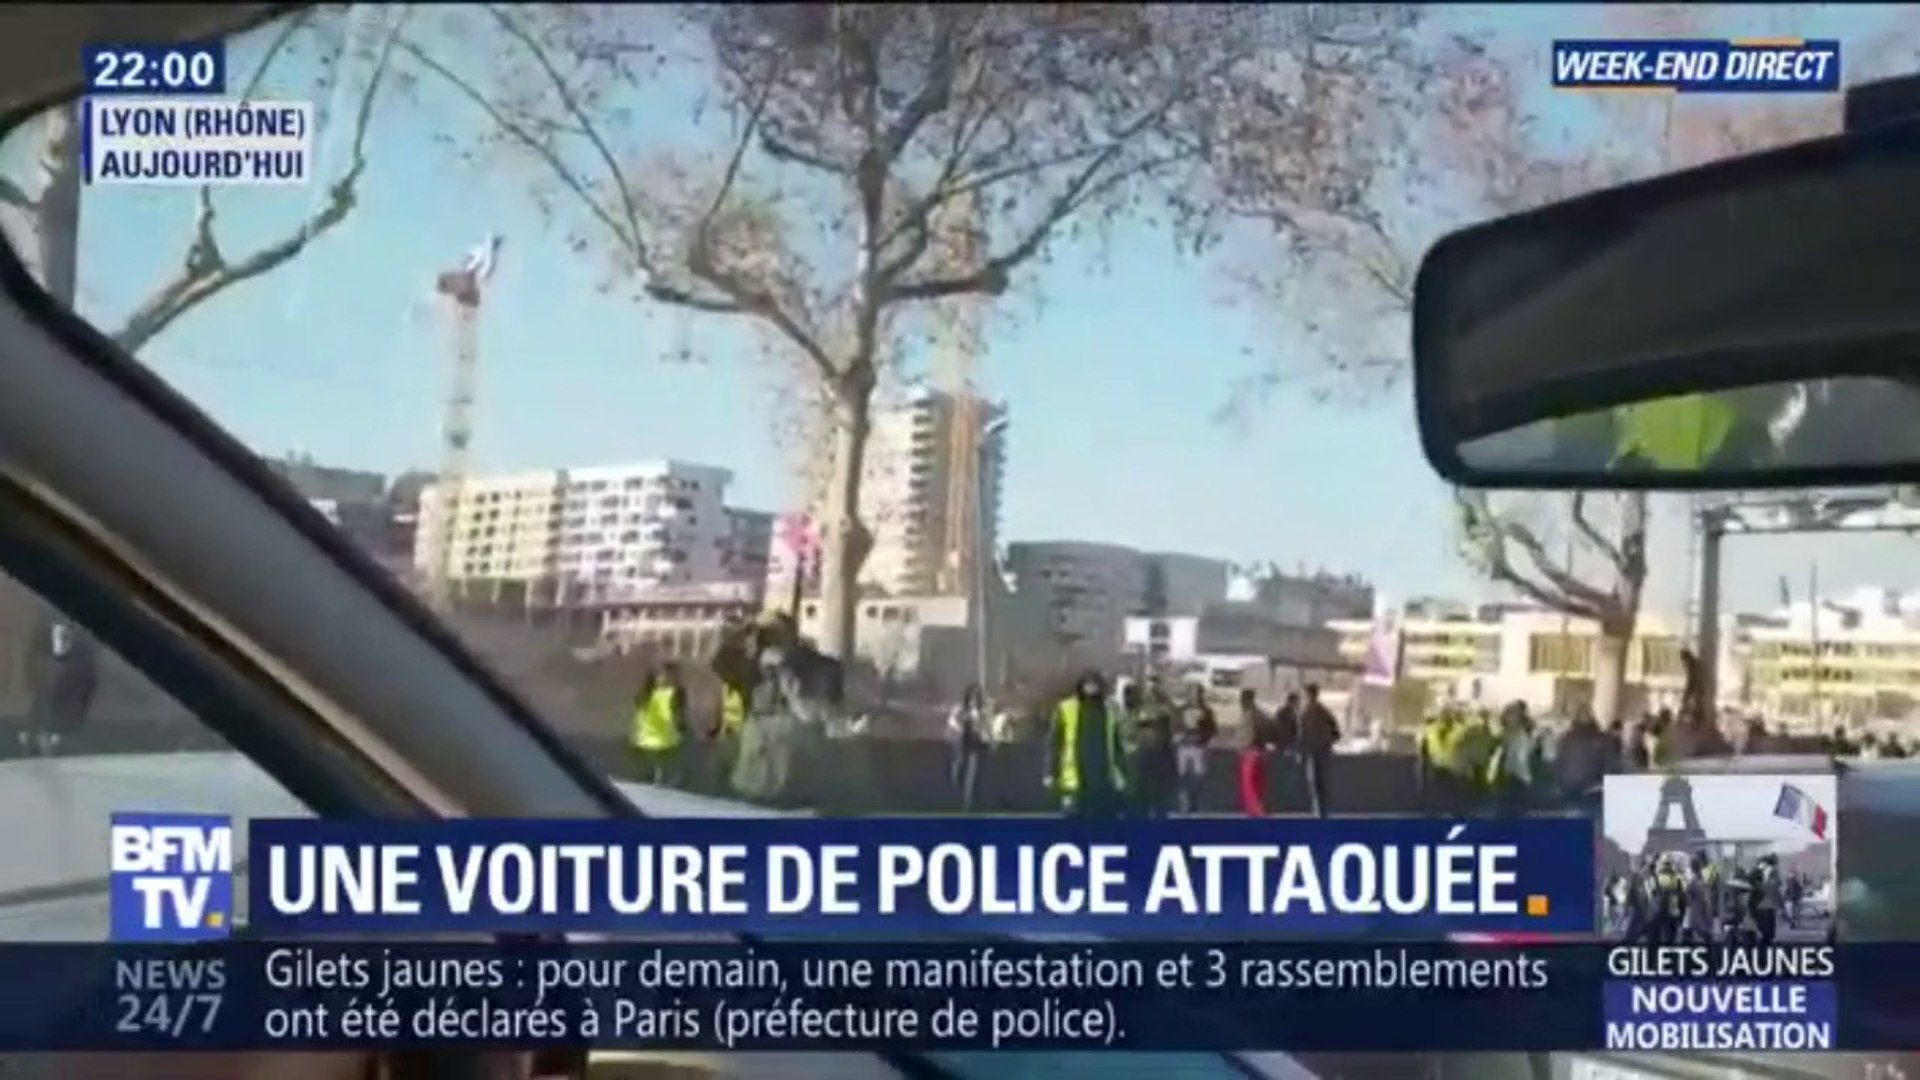 Sale sioniste de m****": Alain Finkielkraut insulté par des gilets jaunes à  Paris - Vidéo Dailymotion